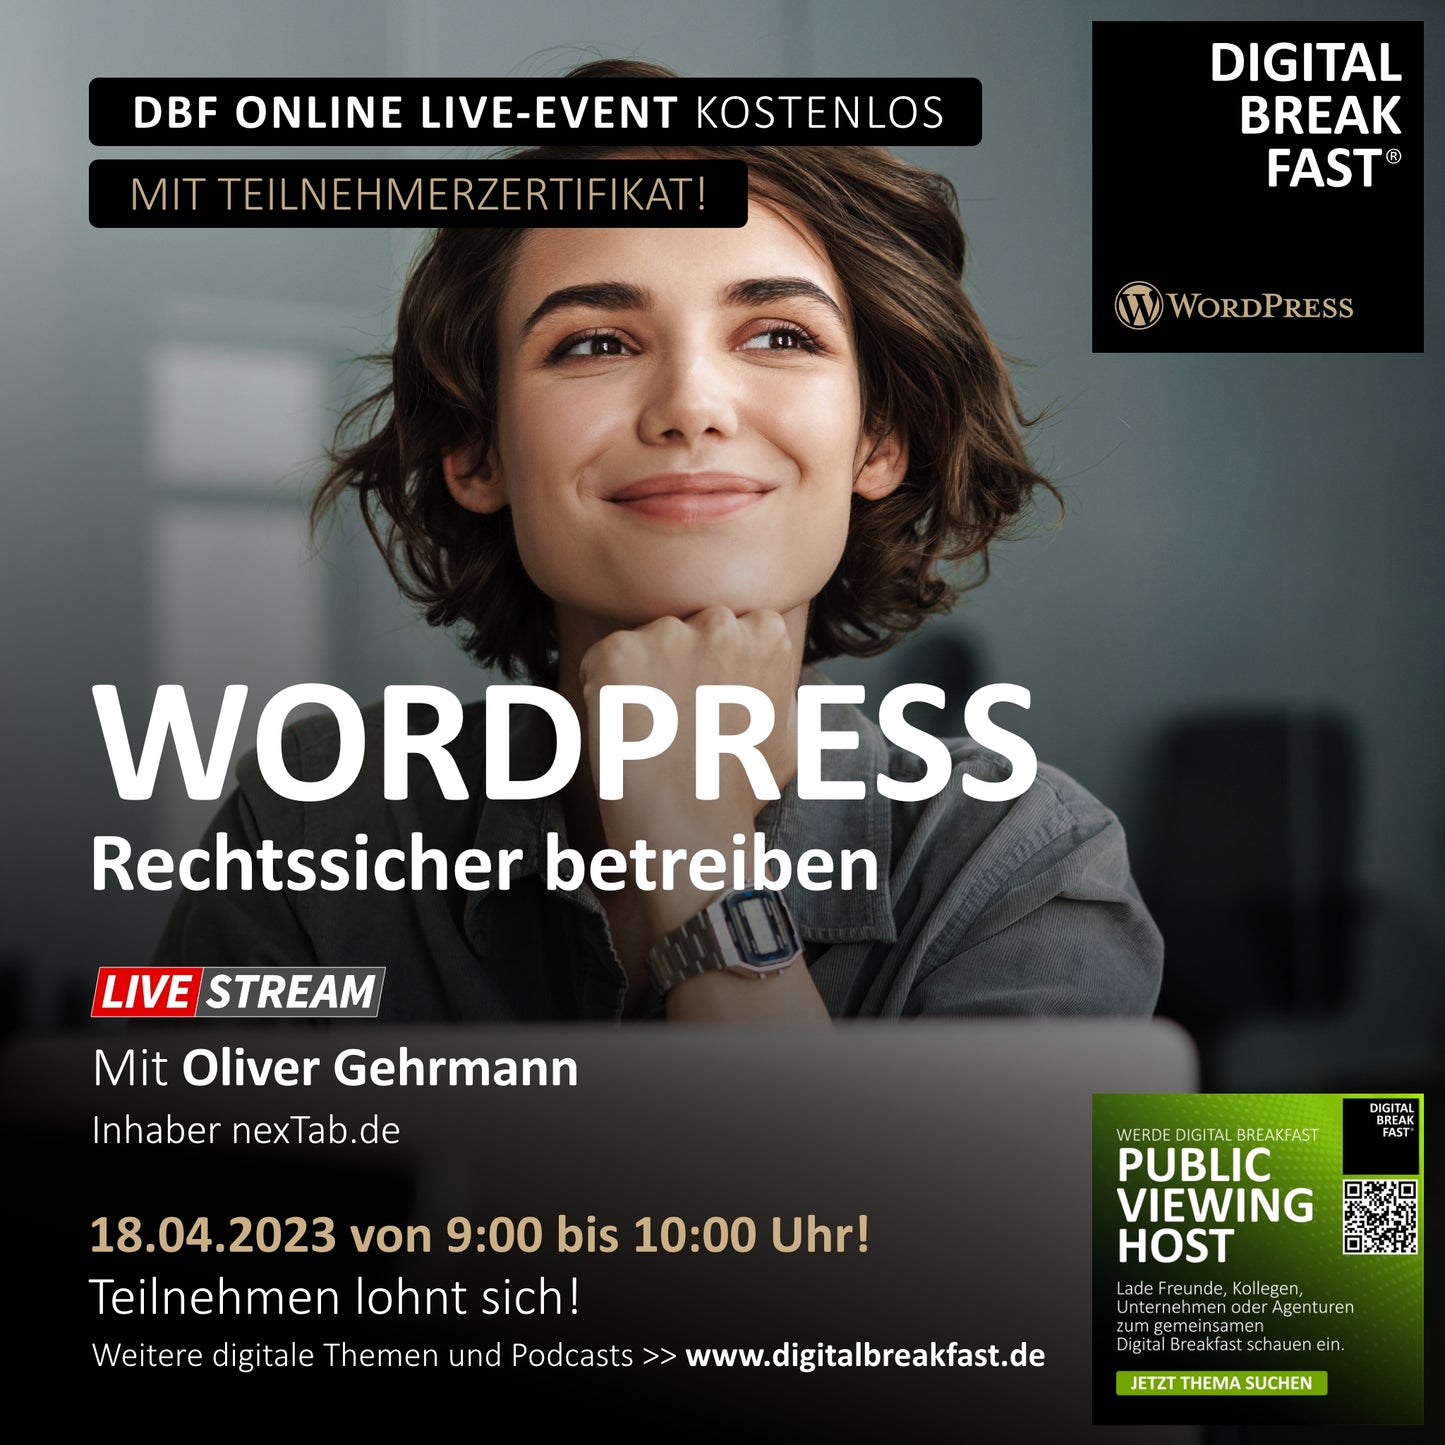 18.04.2023 | "Wordpress - Rechtssicher betreiben" | Oliver Gehrmann | nexTAB